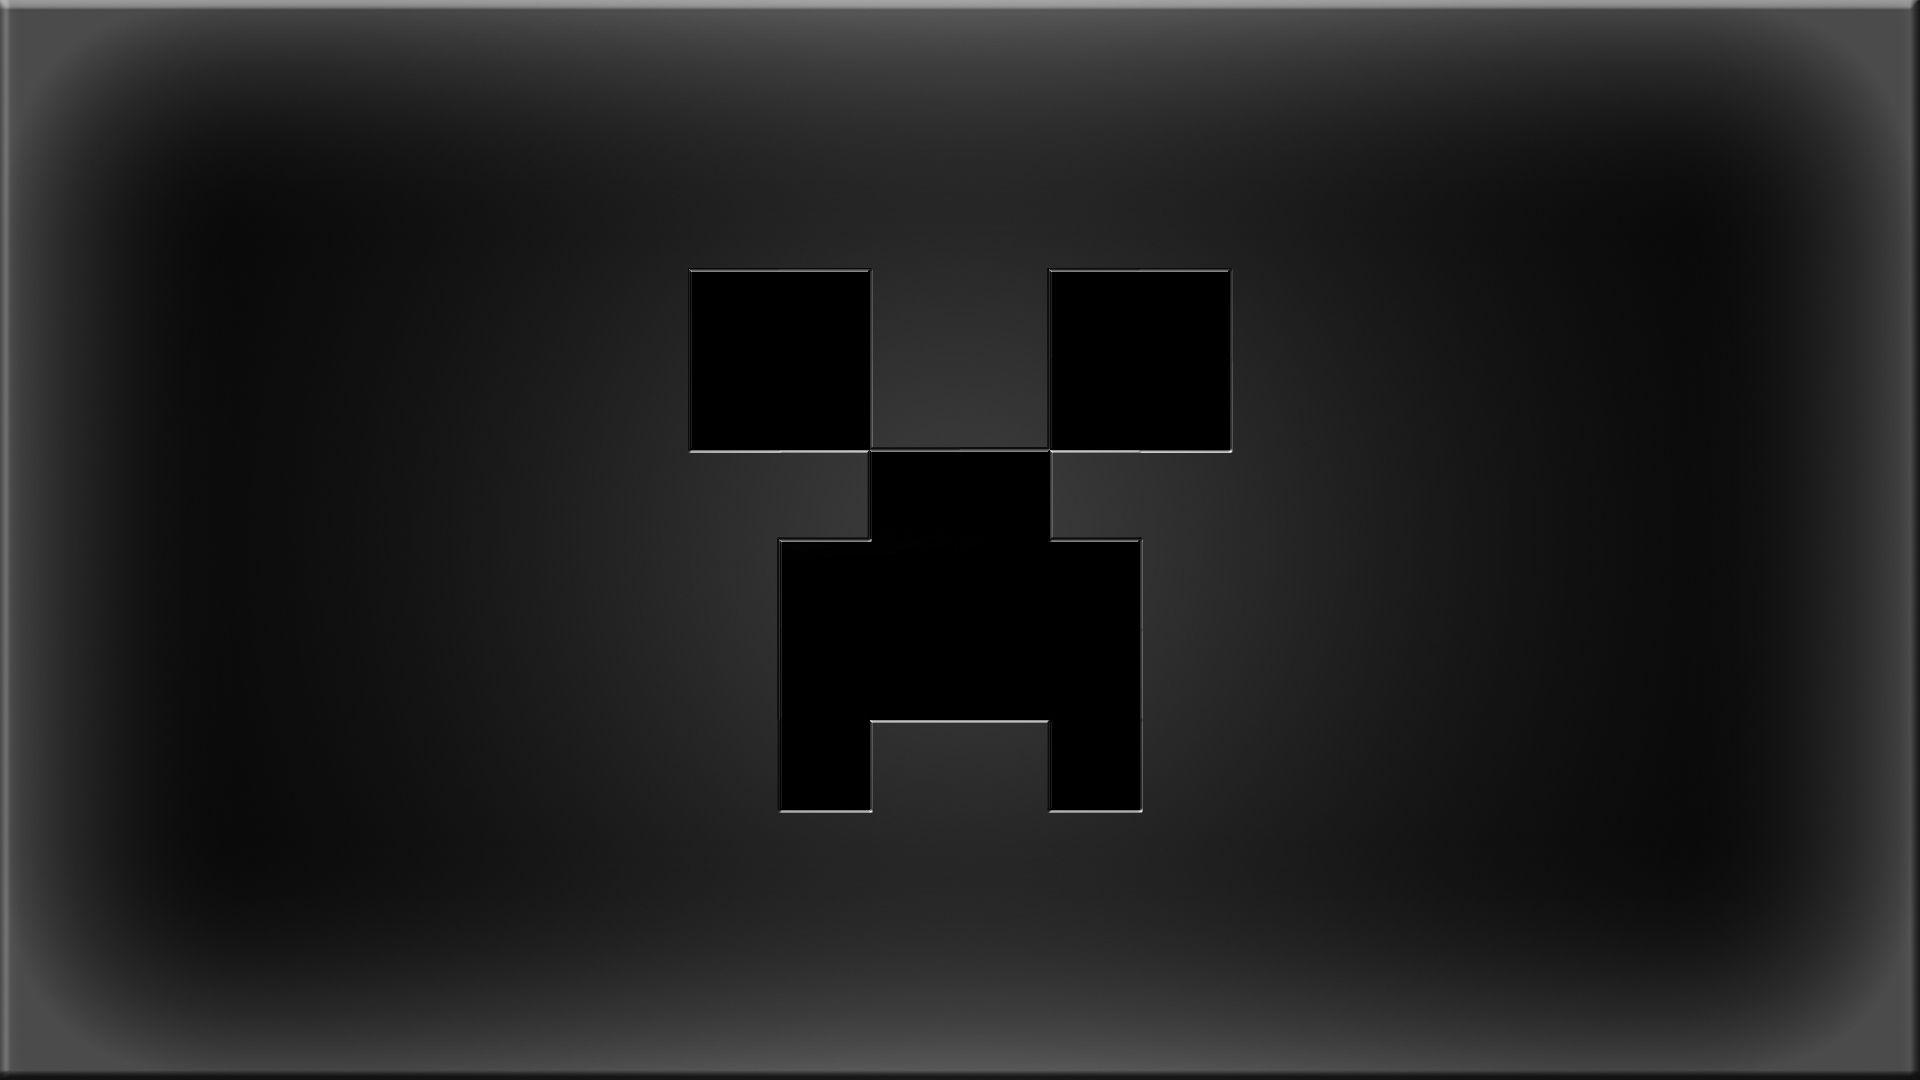 Cool Minecraft Creeper Wallpaper 1920x1080. Hdwidescreens